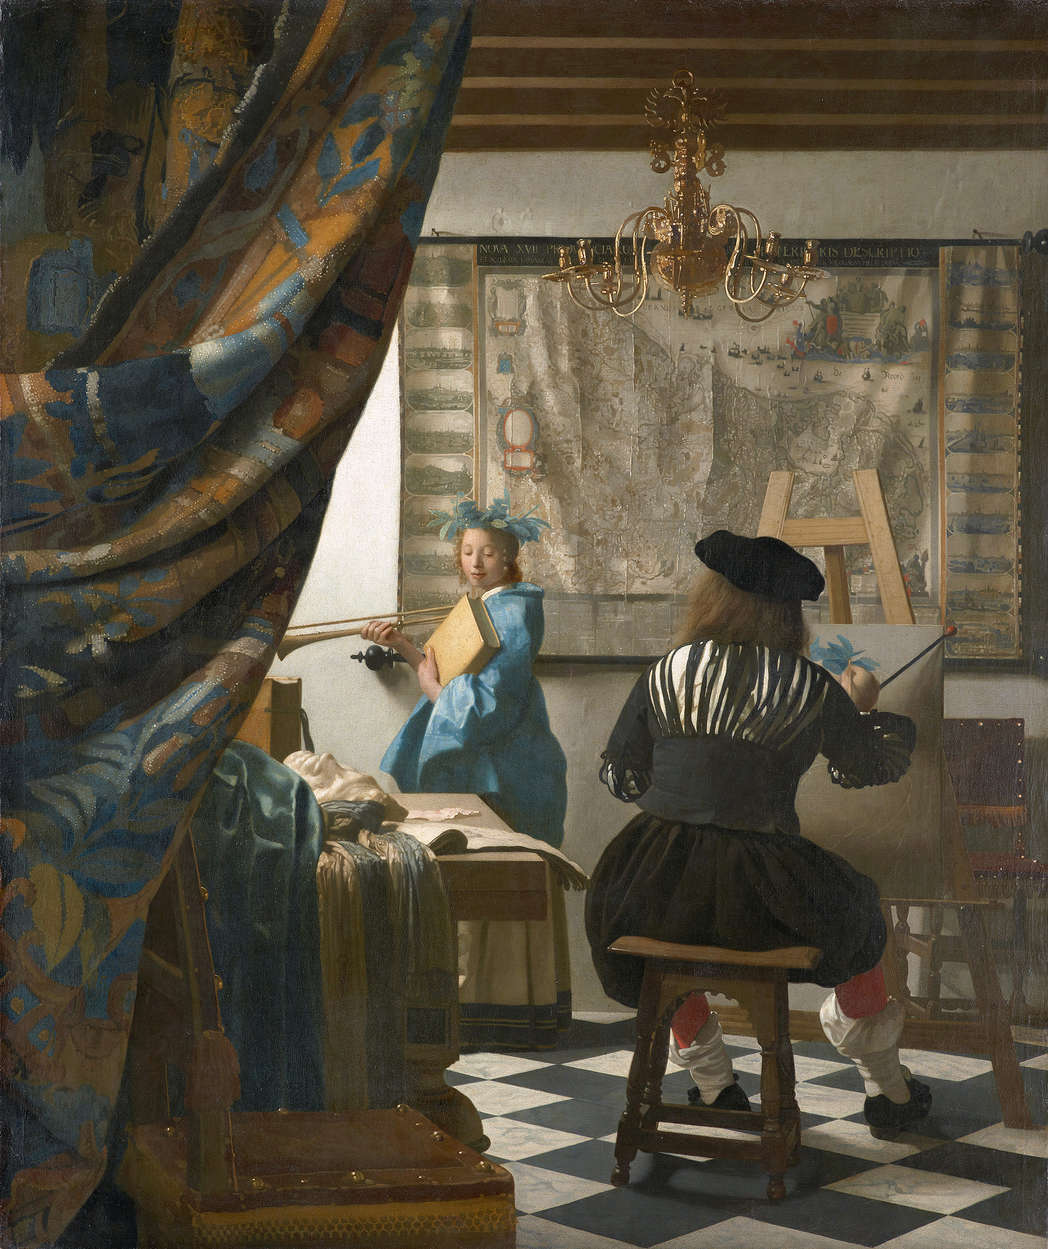             Fototapete "Vermeer in seinem Atelier" von Jan Vermeer
        